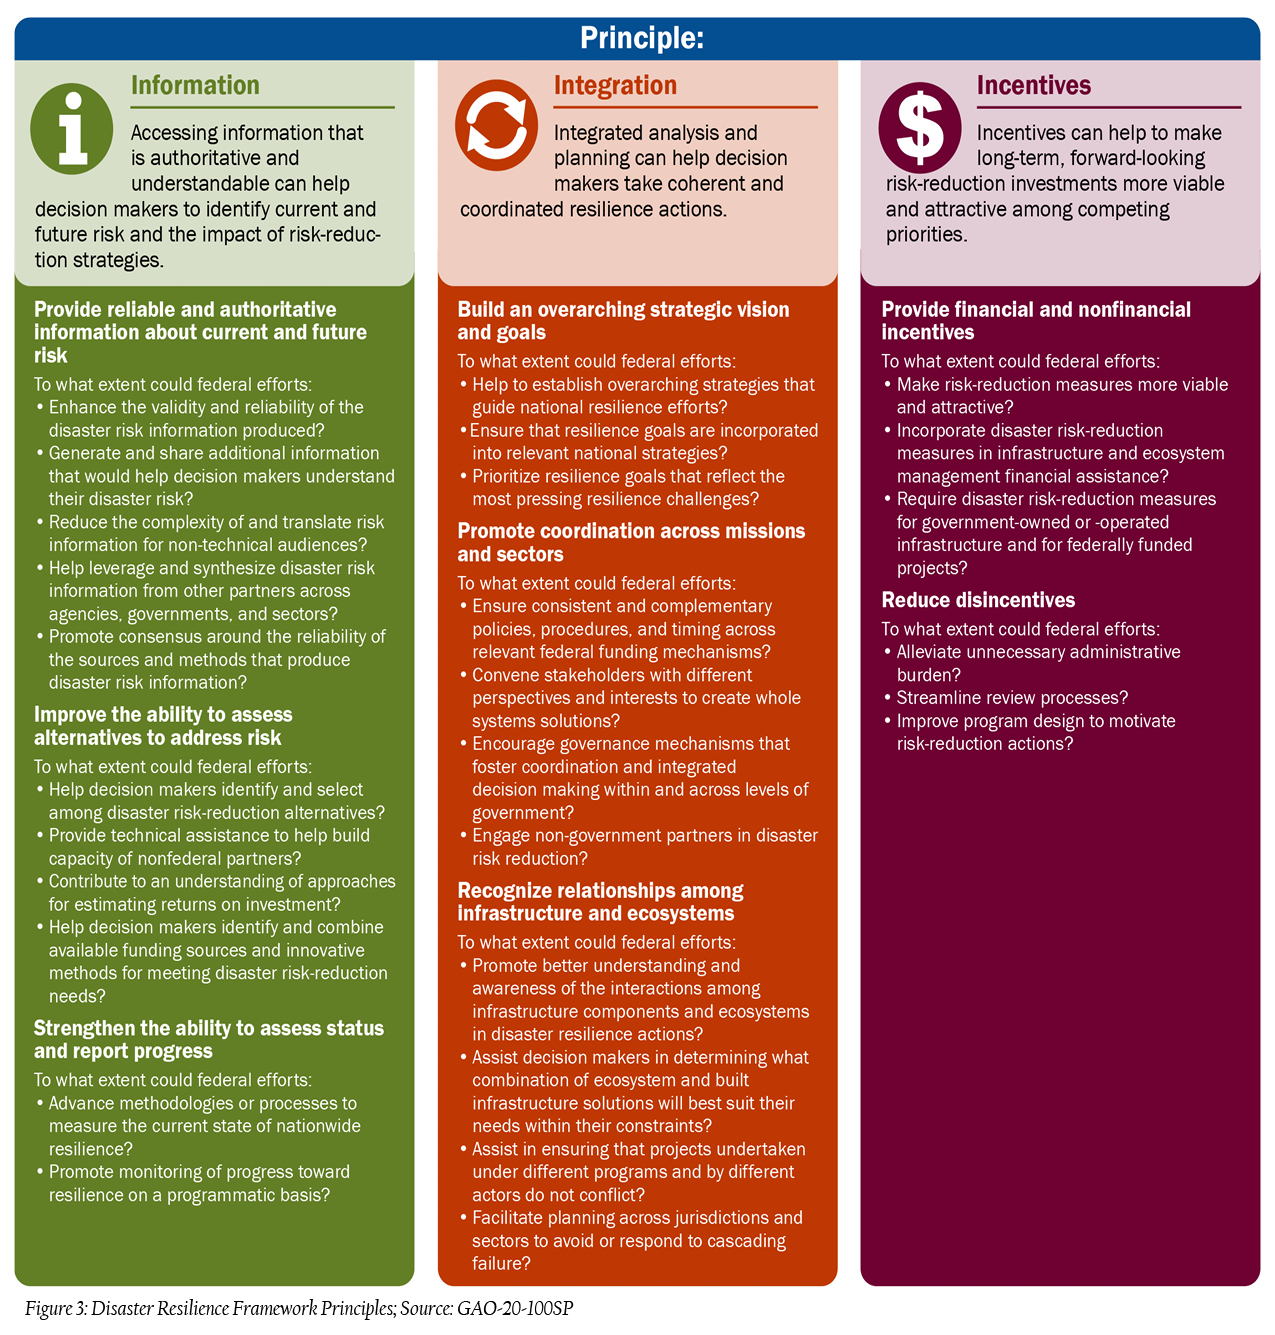 Figure 3: Disaster Resilience Framework